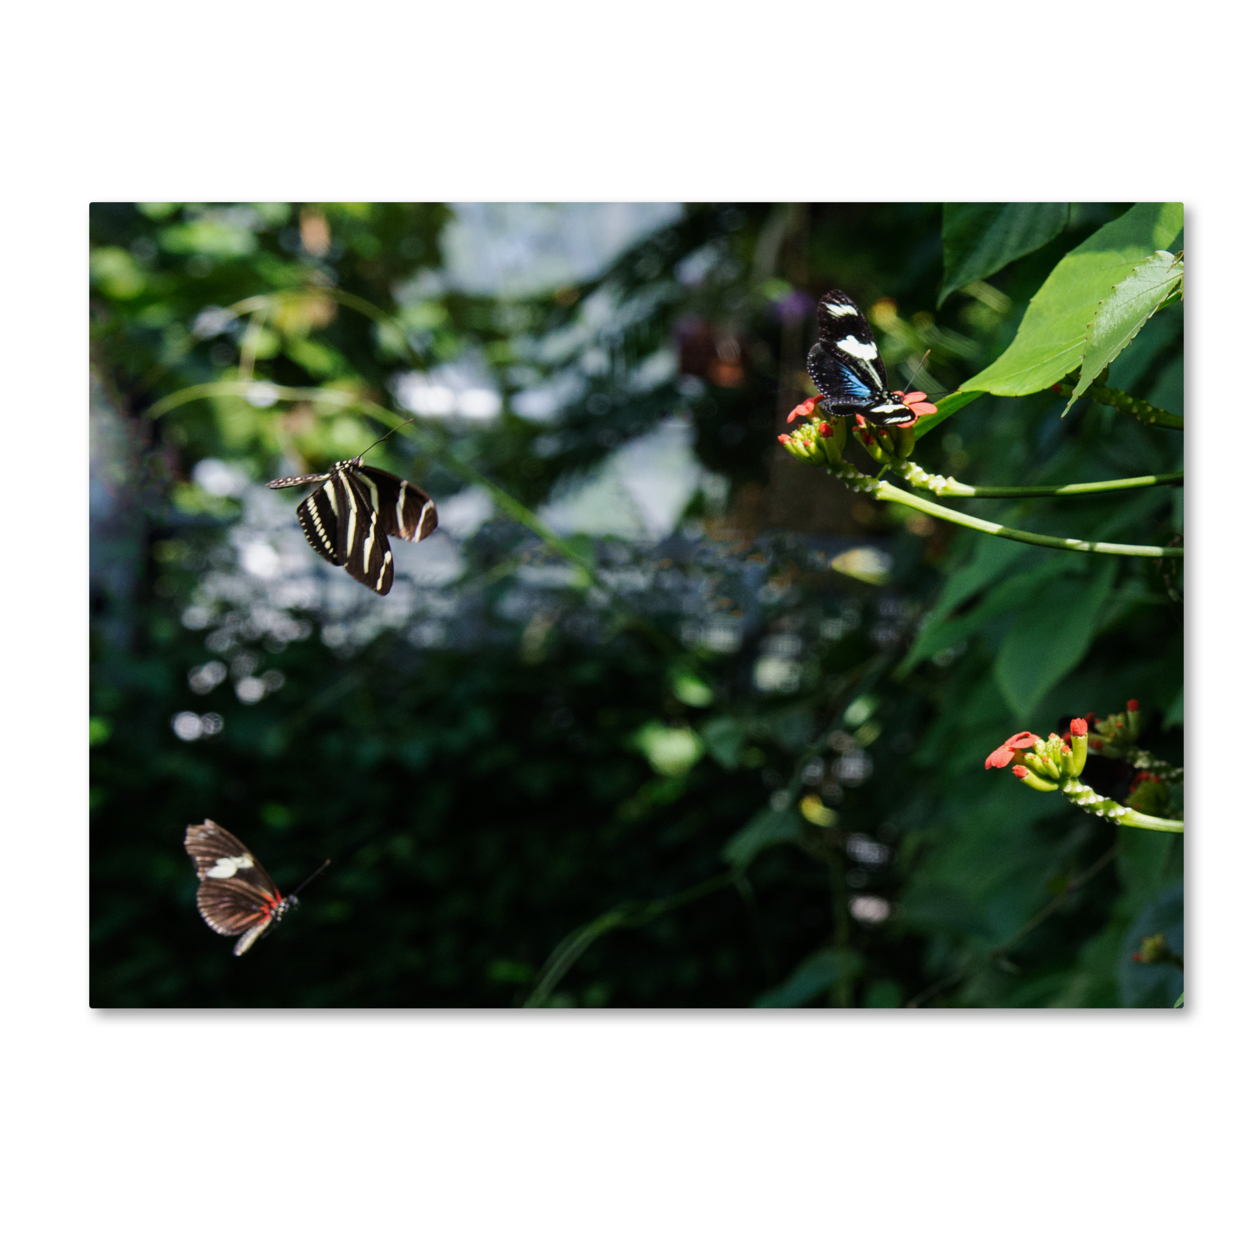 Kurt Shaffer 'Butterflies In Flight' Canvas Wall Art 35 X 47 Inches